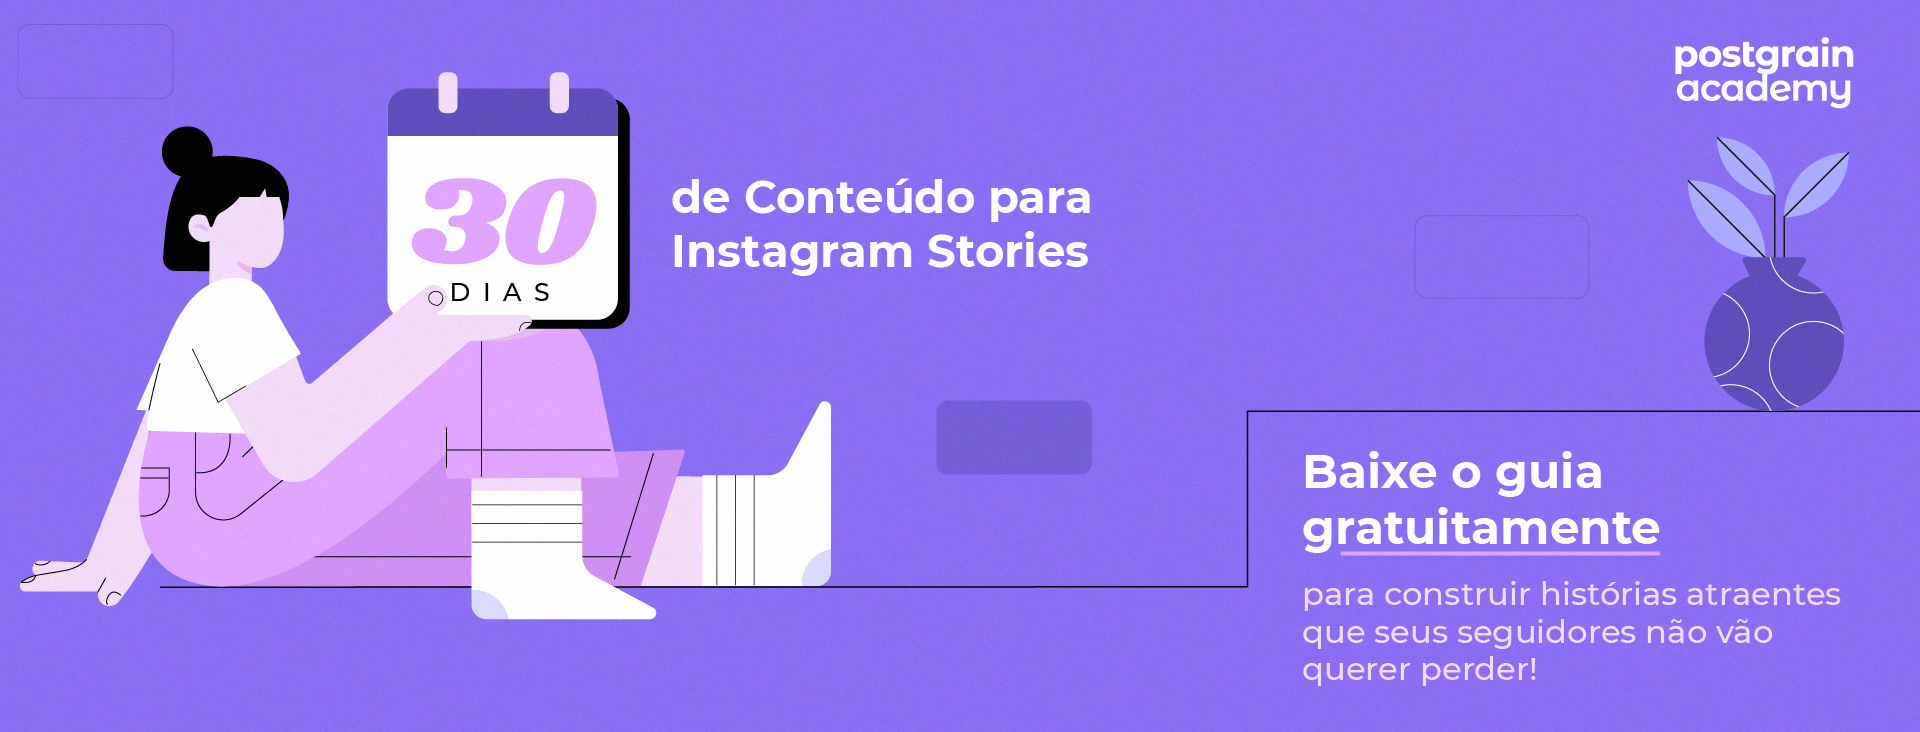 O que postar no Instagram Stories? [+ Material Gratuito]